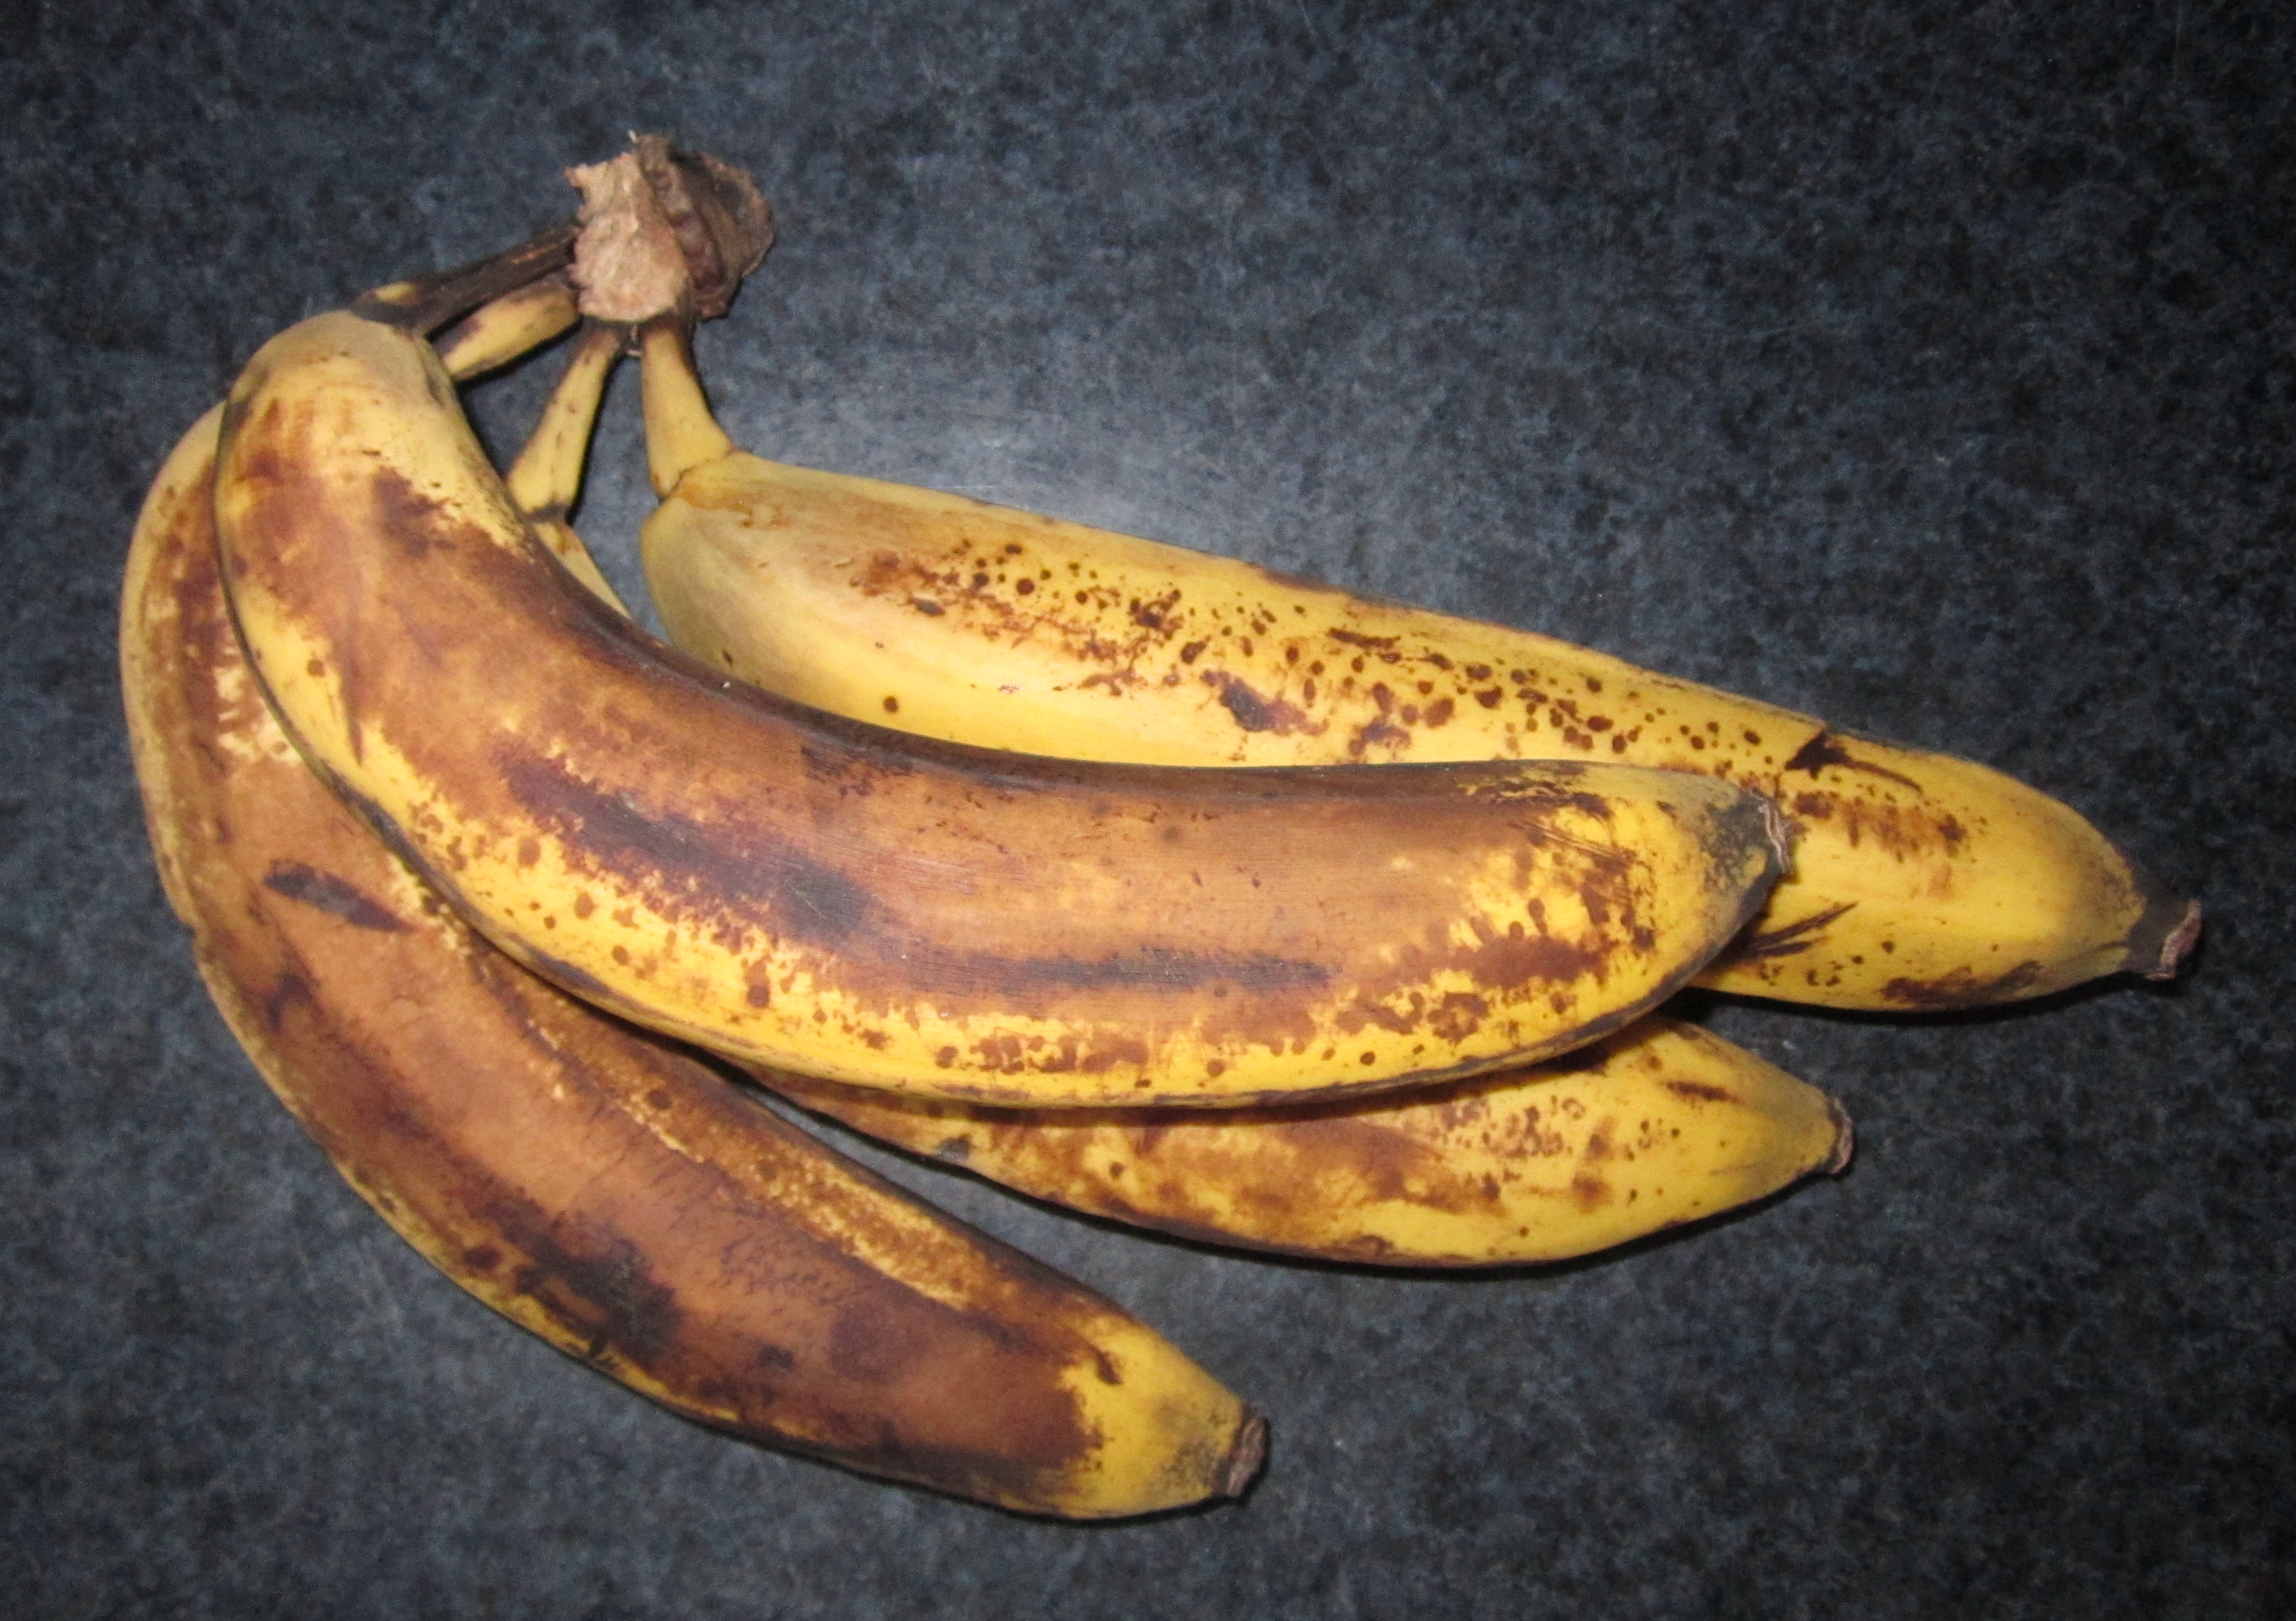 30 bananer om dagen! Kan man virkelig spise så mange bananer?